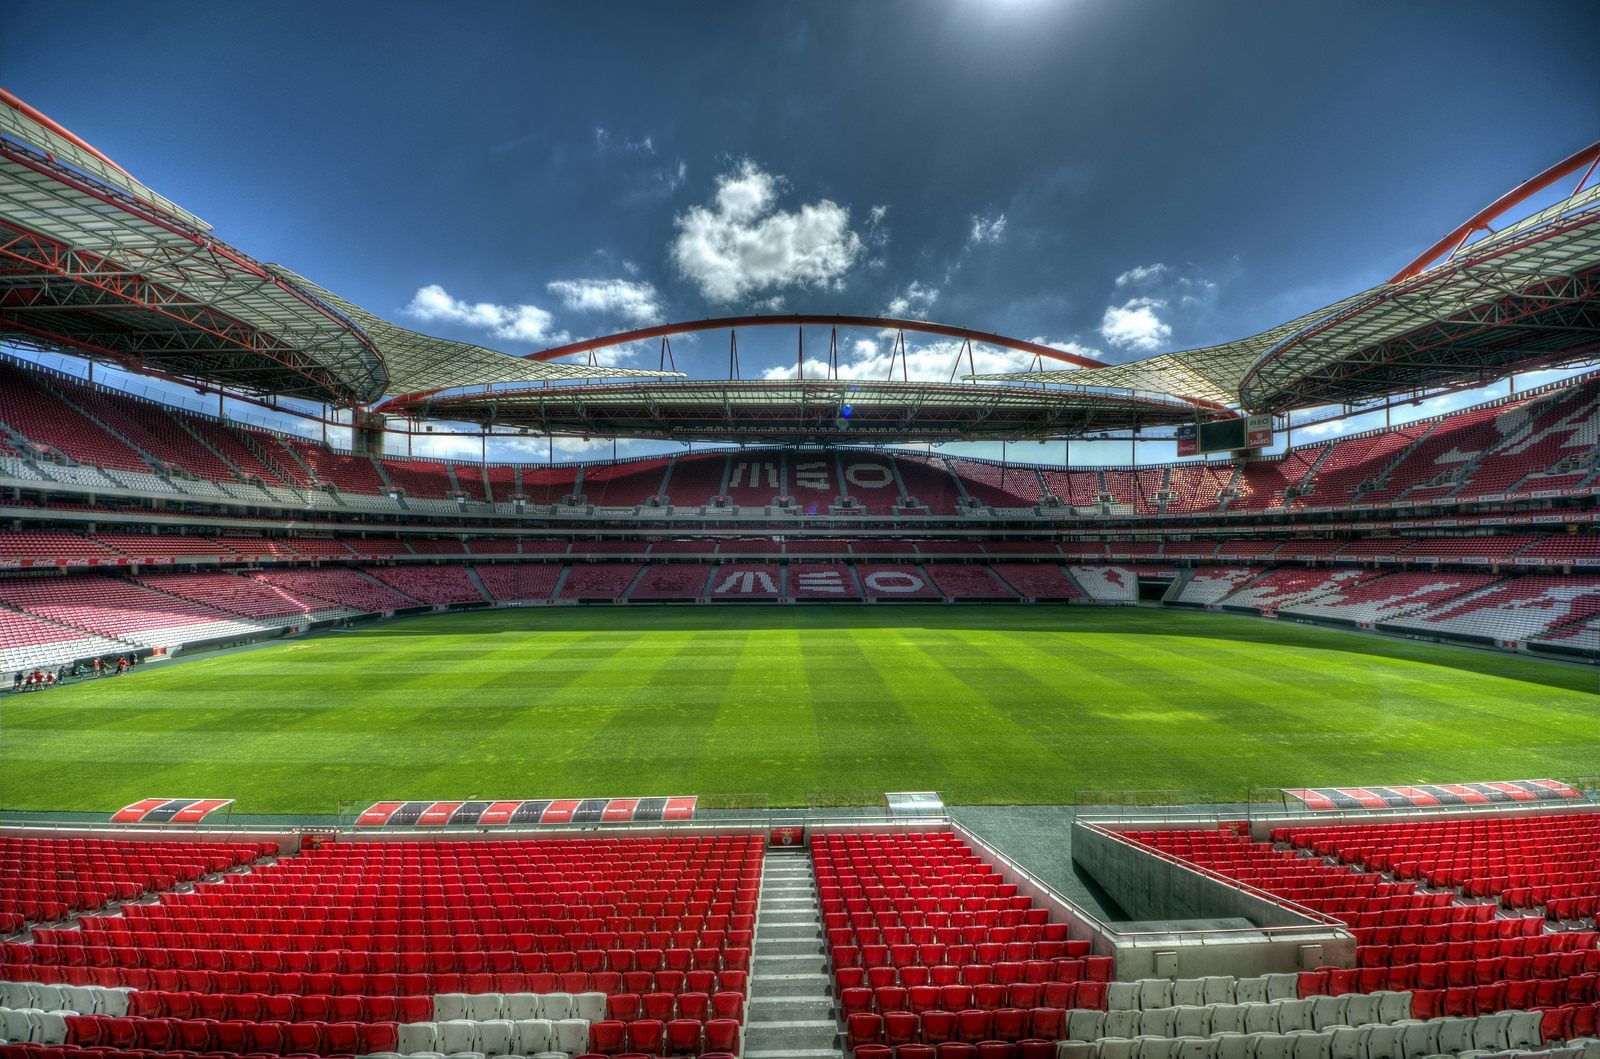 Стадион х. Стадион Эштадиу да луж. Estadio da luz стадион. Стадион Бенфики. Стадион да Луш в Лиссабоне.